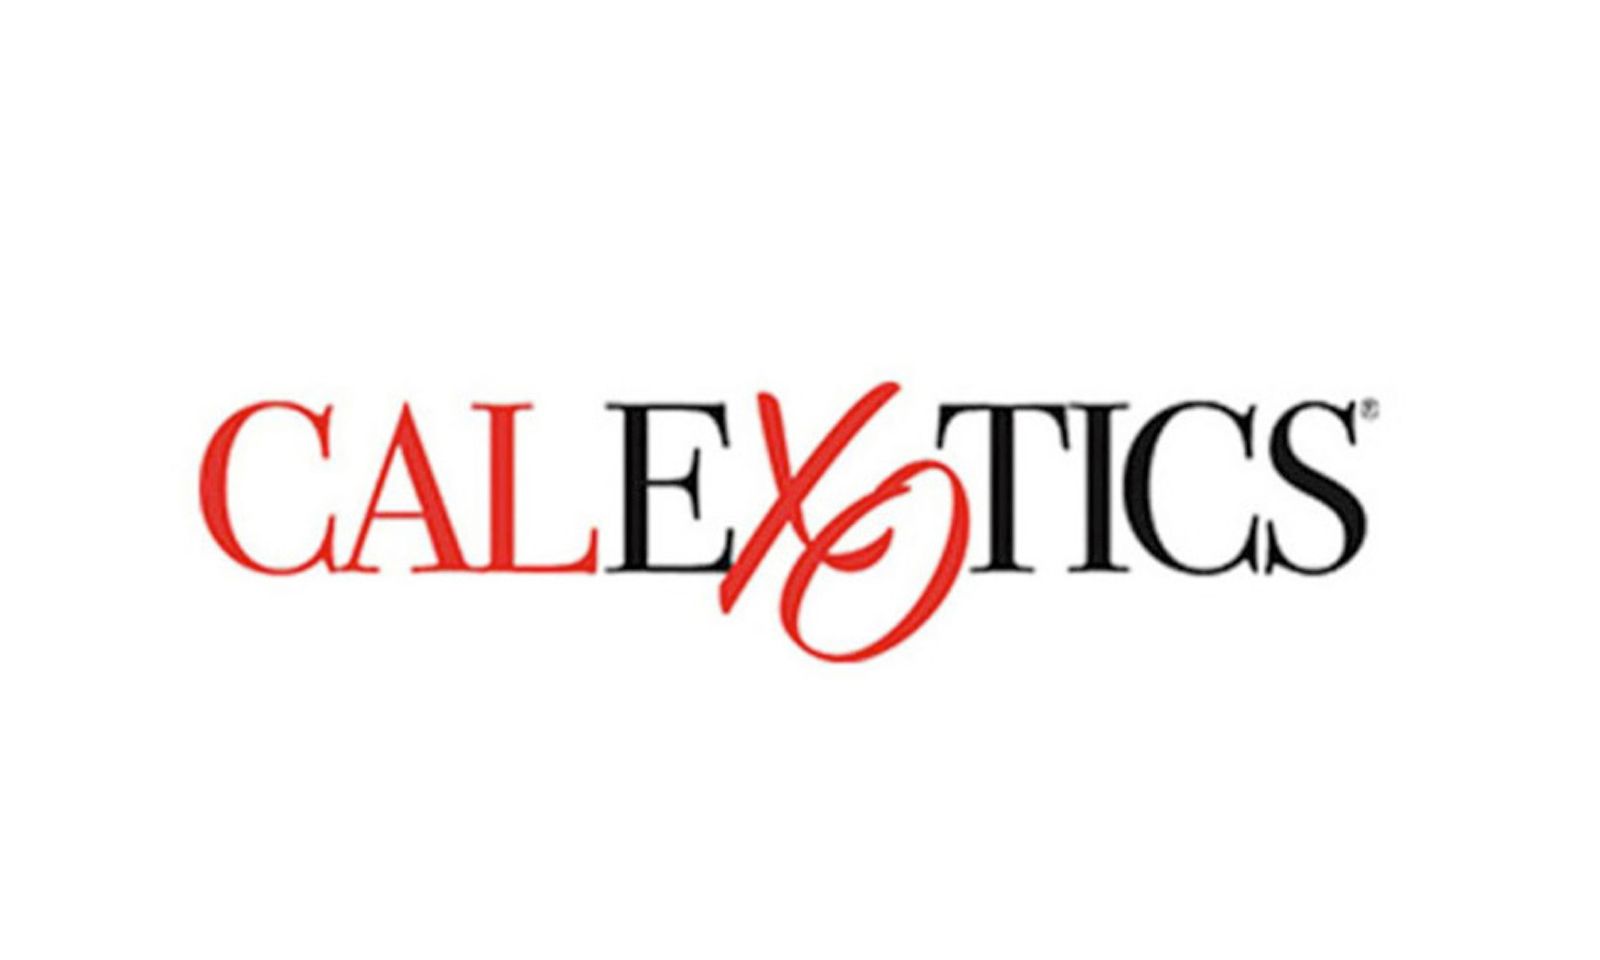 CalExotics Wins Big During Awards Season